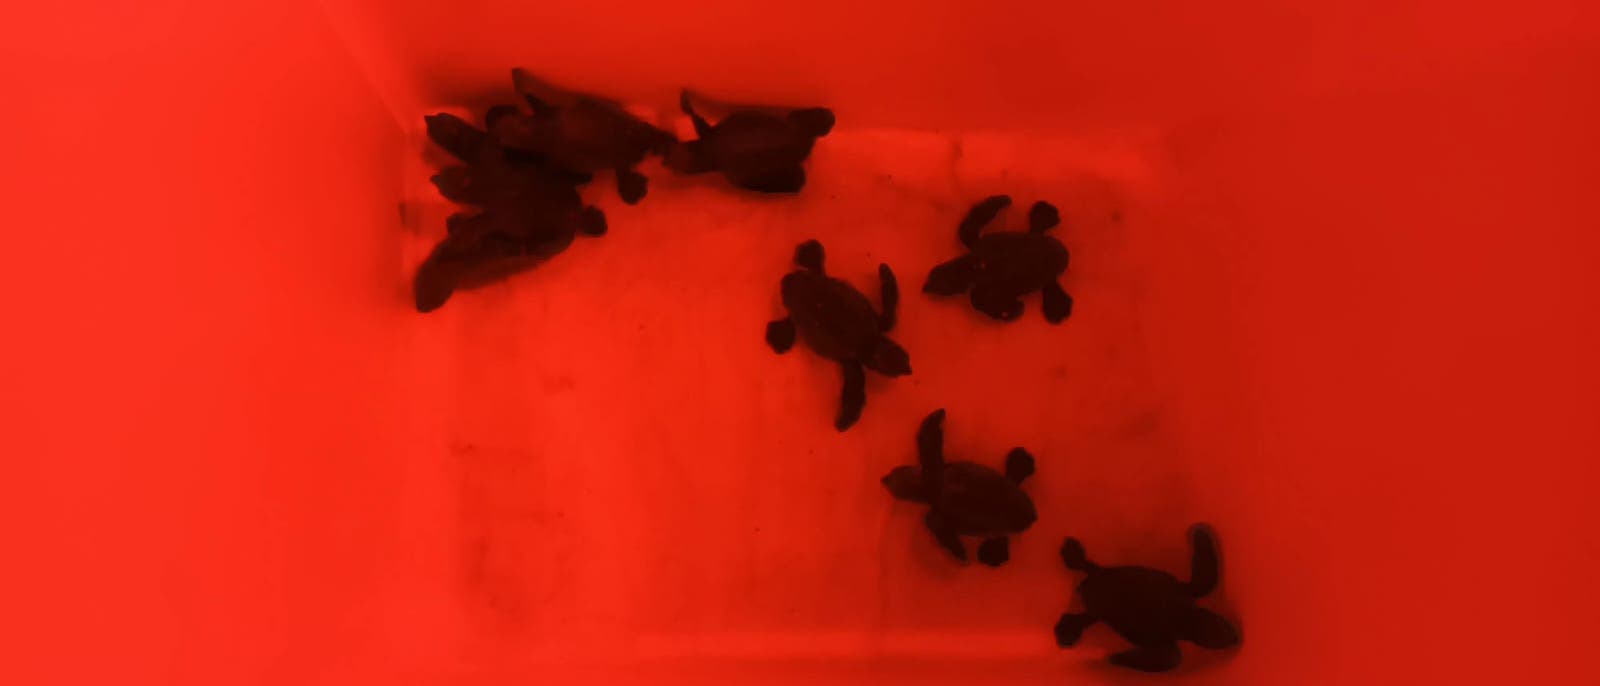 Die mallorquinischen Schildkröten wurden in eine Naturschutzeinrichtung verbracht.